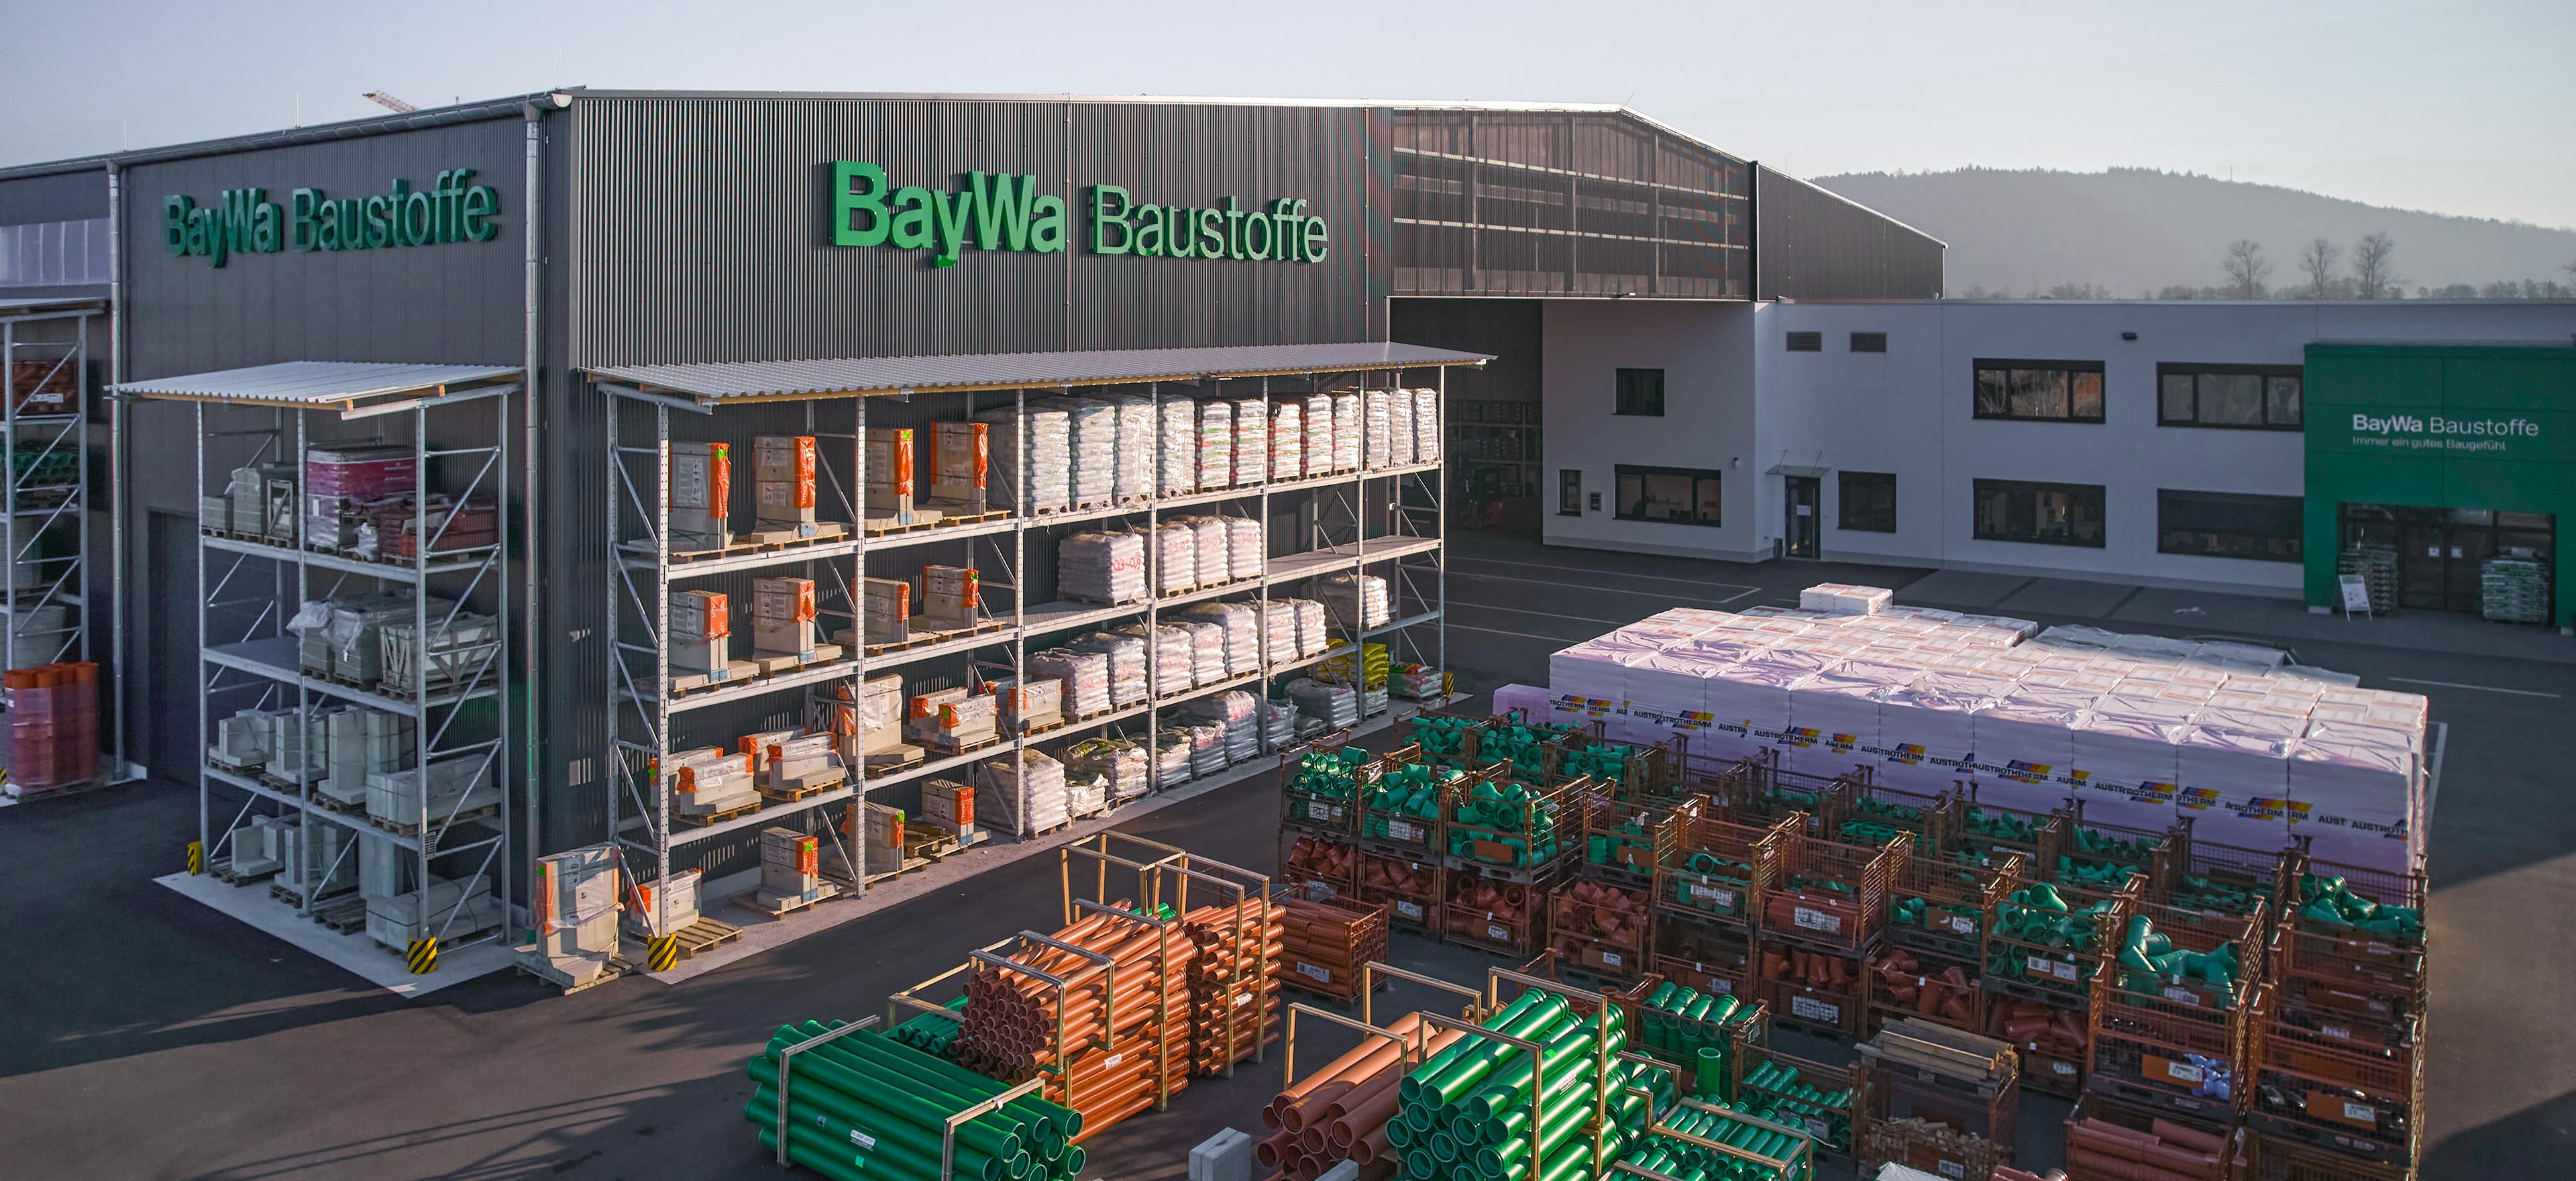 Aussenansicht eines BayWa Baustoffhofes mit Baumaterialien in Regalen und auf Paletten